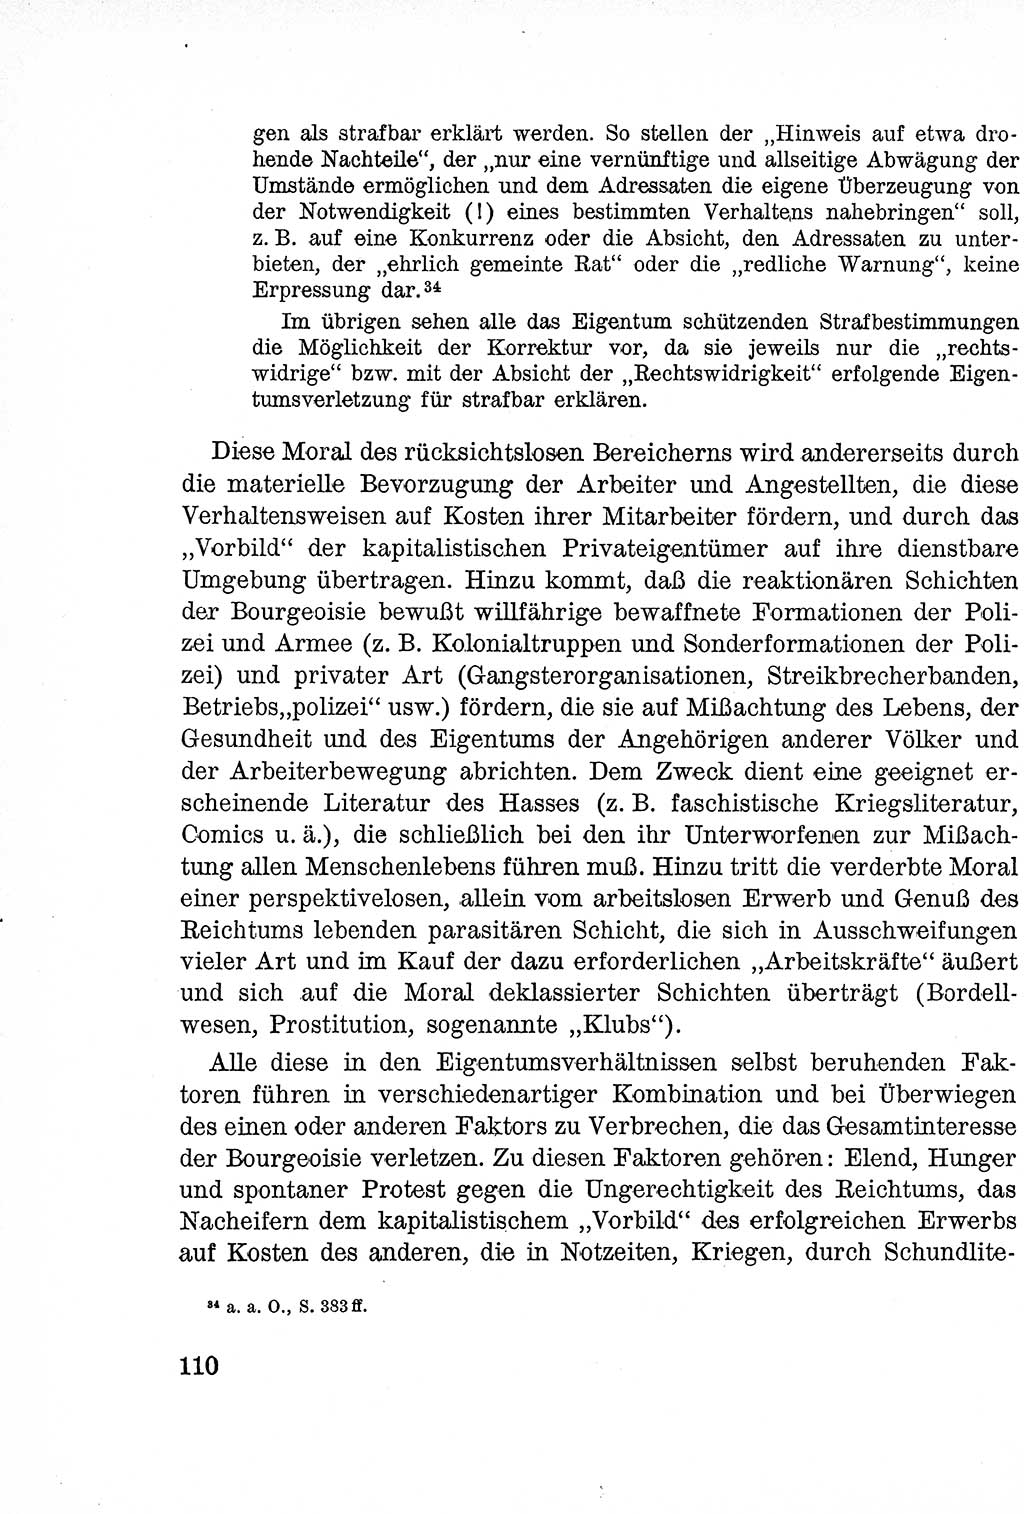 Lehrbuch des Strafrechts der Deutschen Demokratischen Republik (DDR), Allgemeiner Teil 1957, Seite 110 (Lb. Strafr. DDR AT 1957, S. 110)